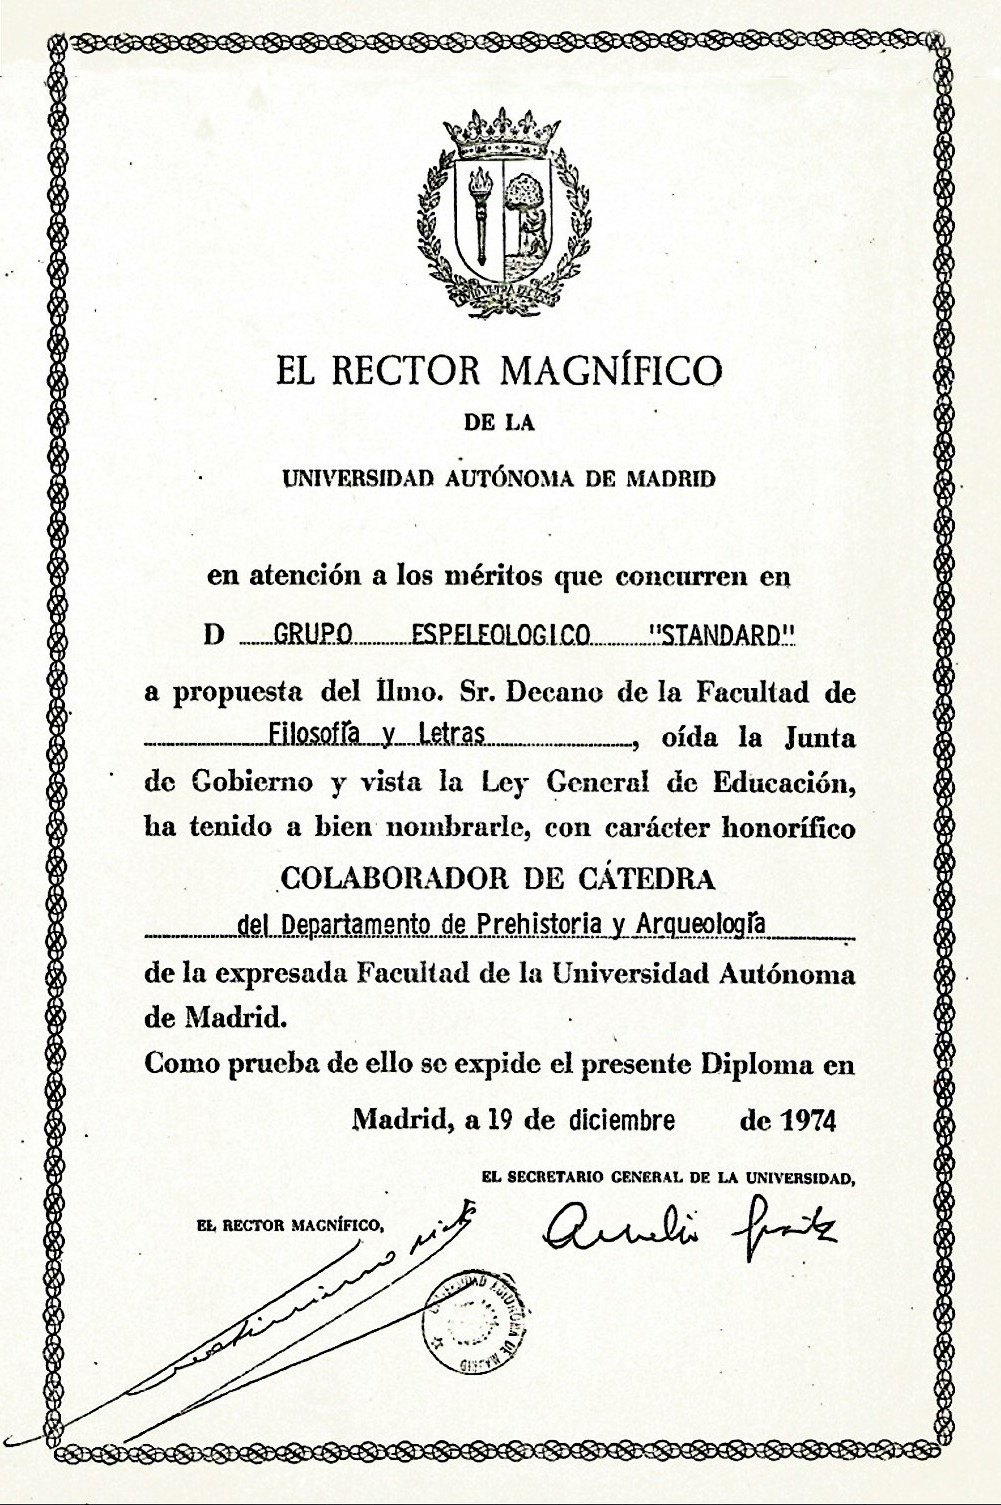 Diploma concedido al Grupo Espeleológico Standard por la Universidad Autónoma de Madrid